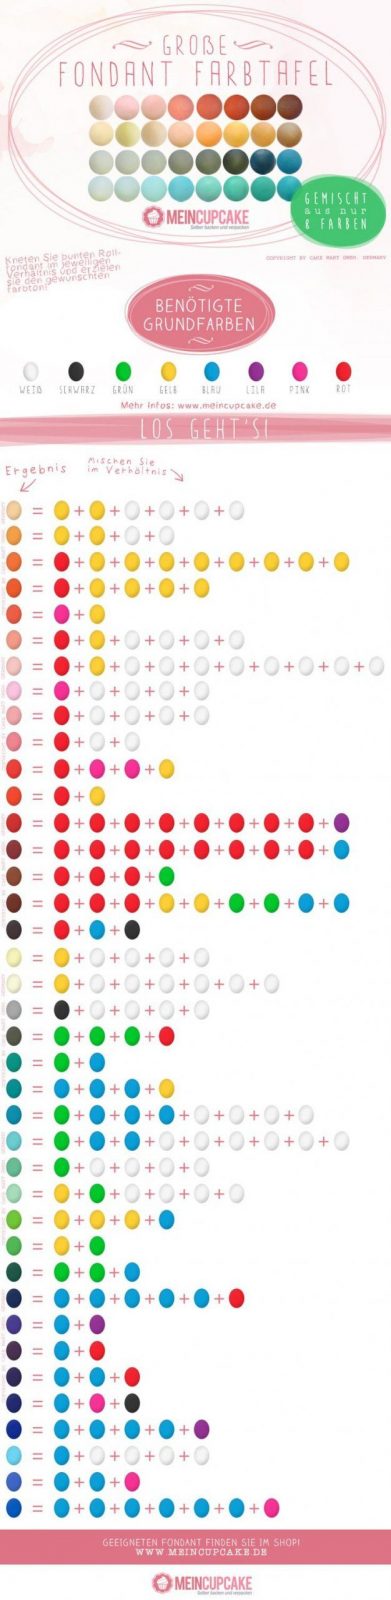 Die Besten 20 Farben Mischen Ideen Auf Pinterest  Mischfarben von Wandfarben Selber Mischen Tabelle Bild